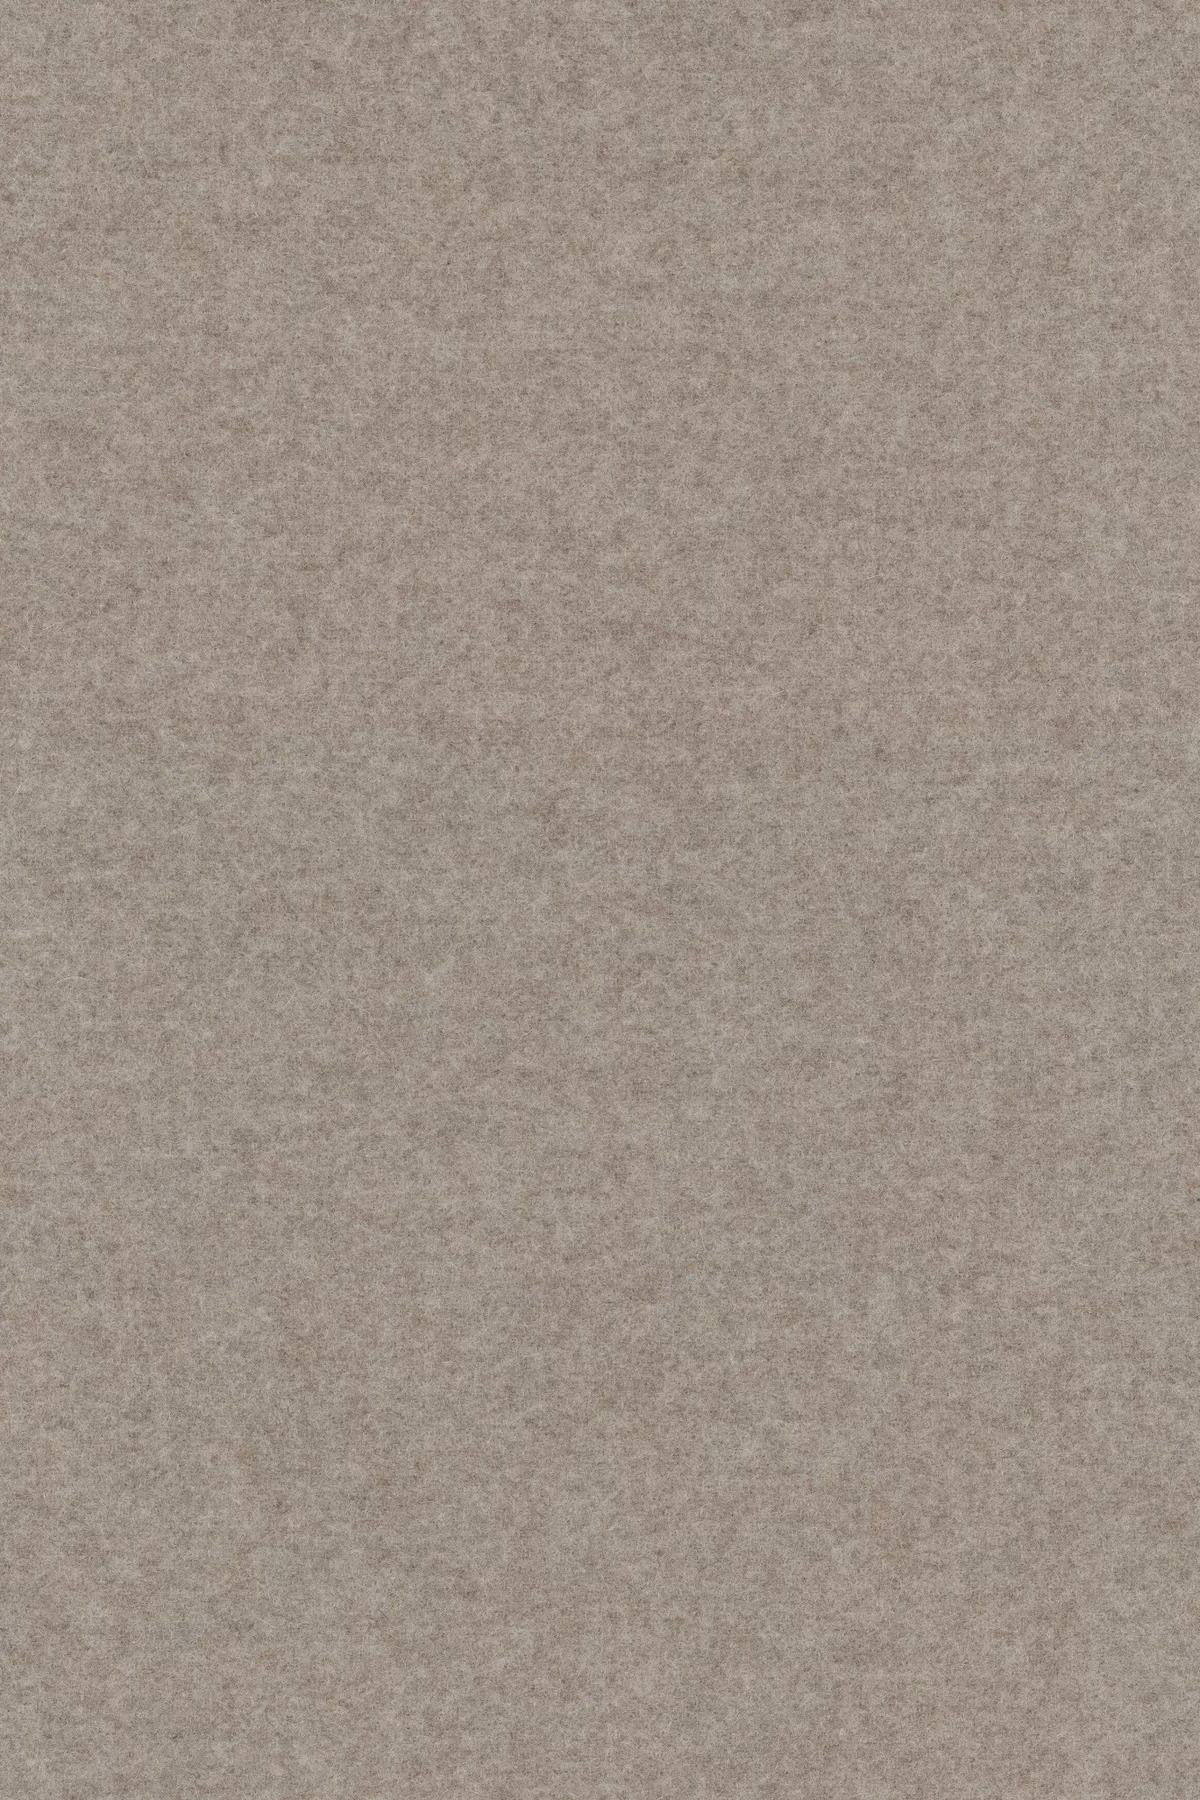 Fabric sample Divina Melange 3 227 grey